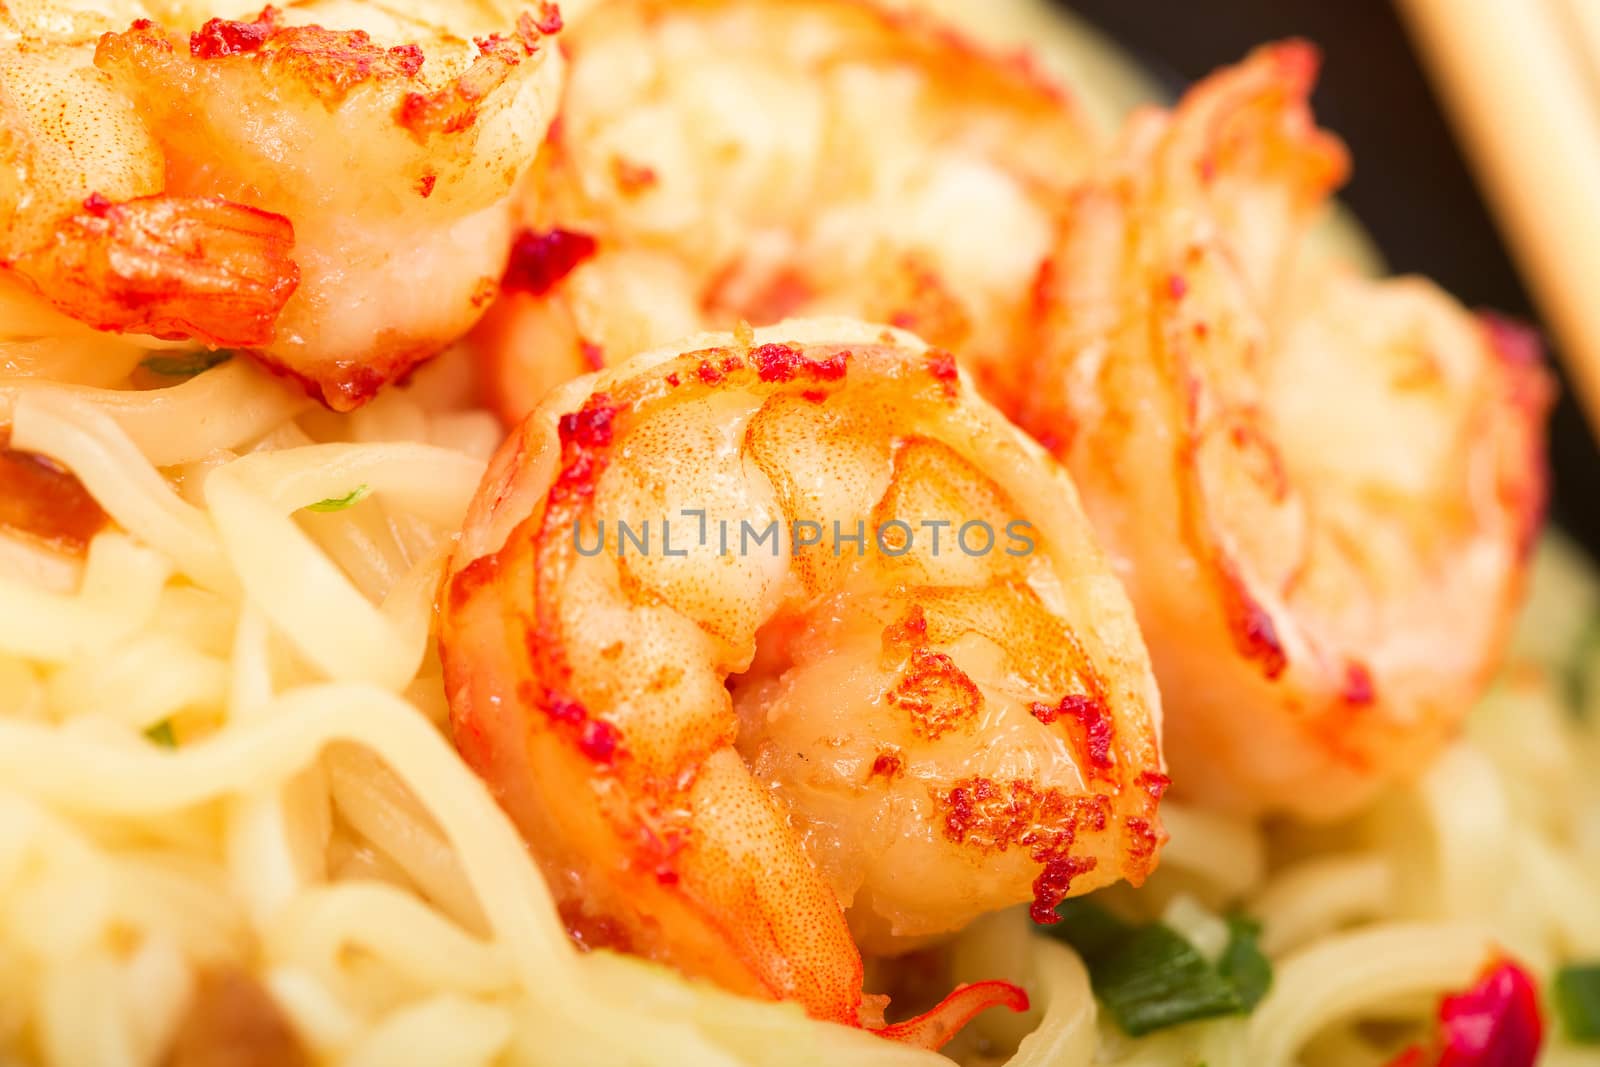 Fried shrimp and noodle soup bowl closeup